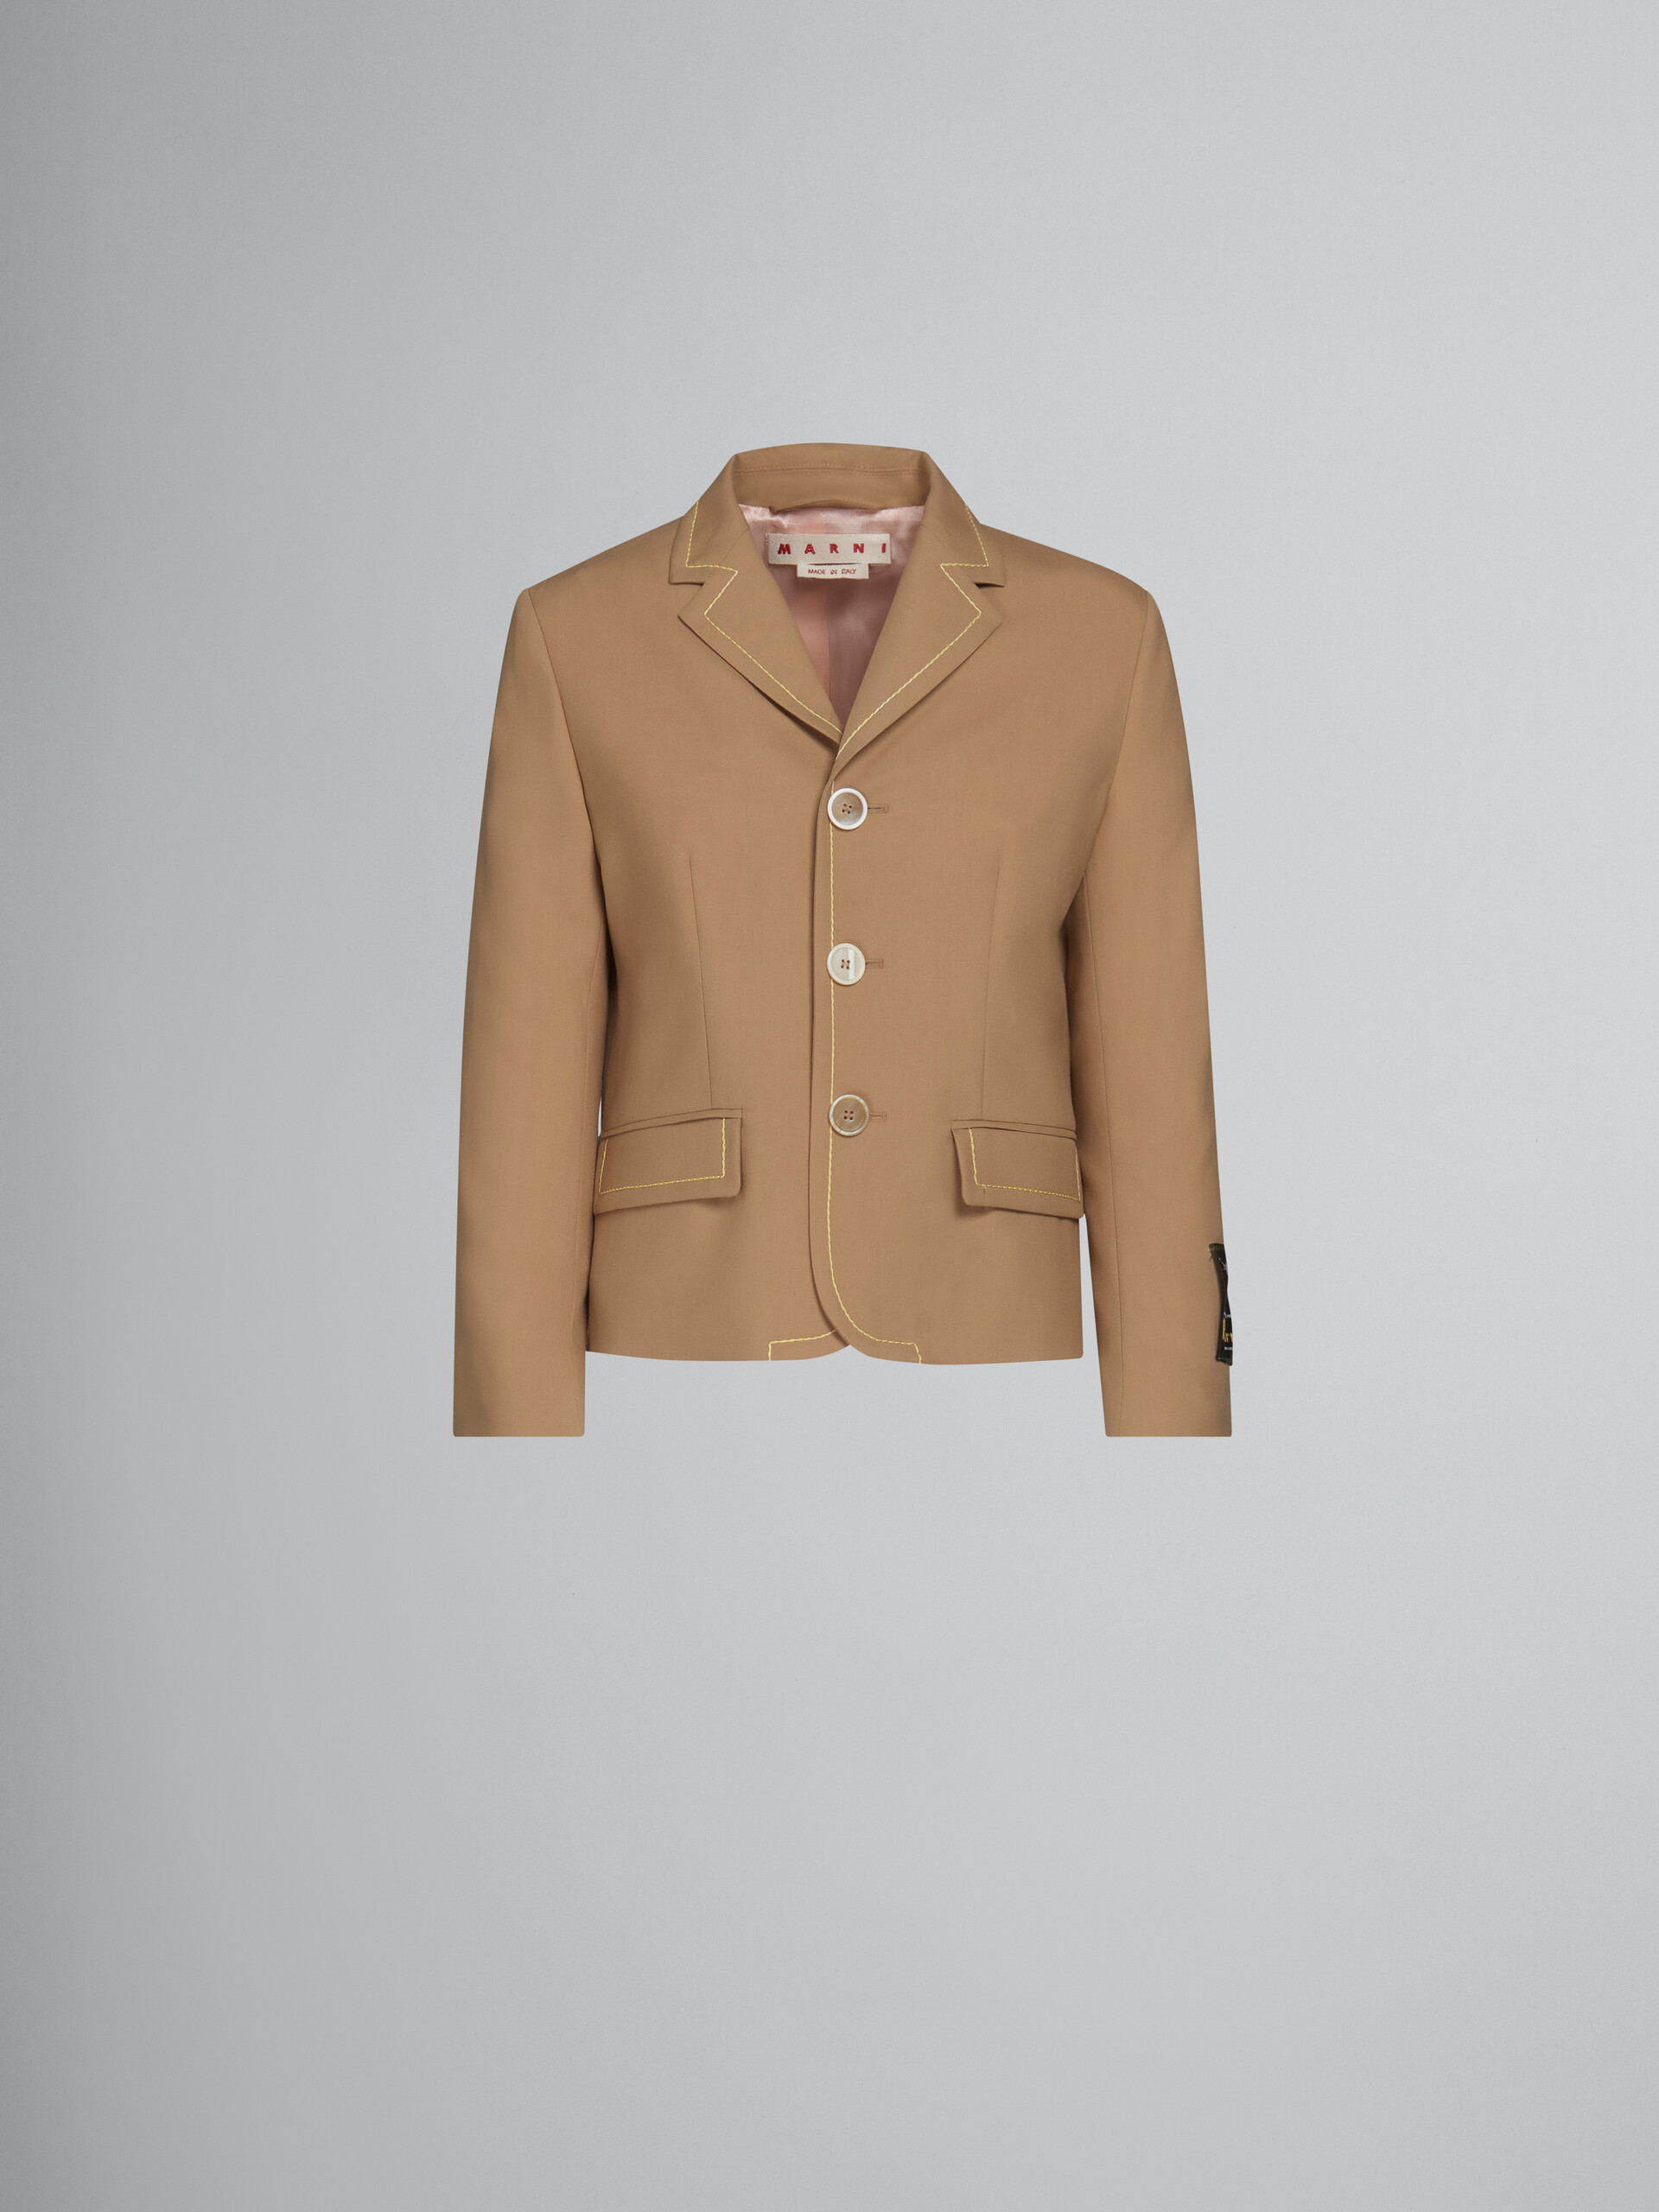 Veste en laine beige avec surpiqûres contrastantes - Manteaux - Image 1